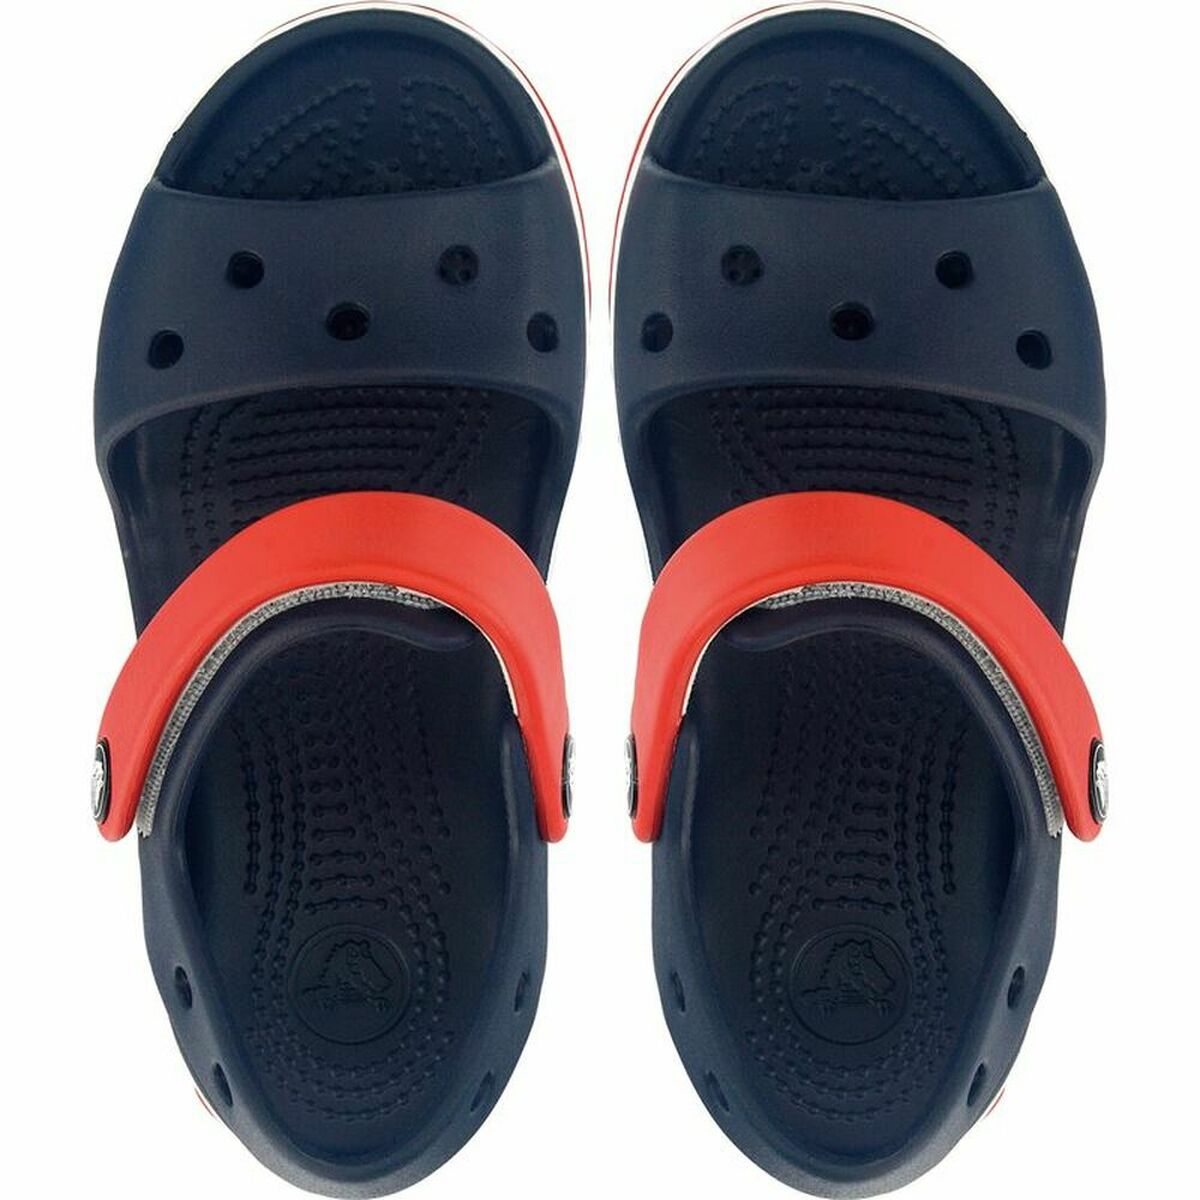 Children's sandals Crocs Crocband Dark blue